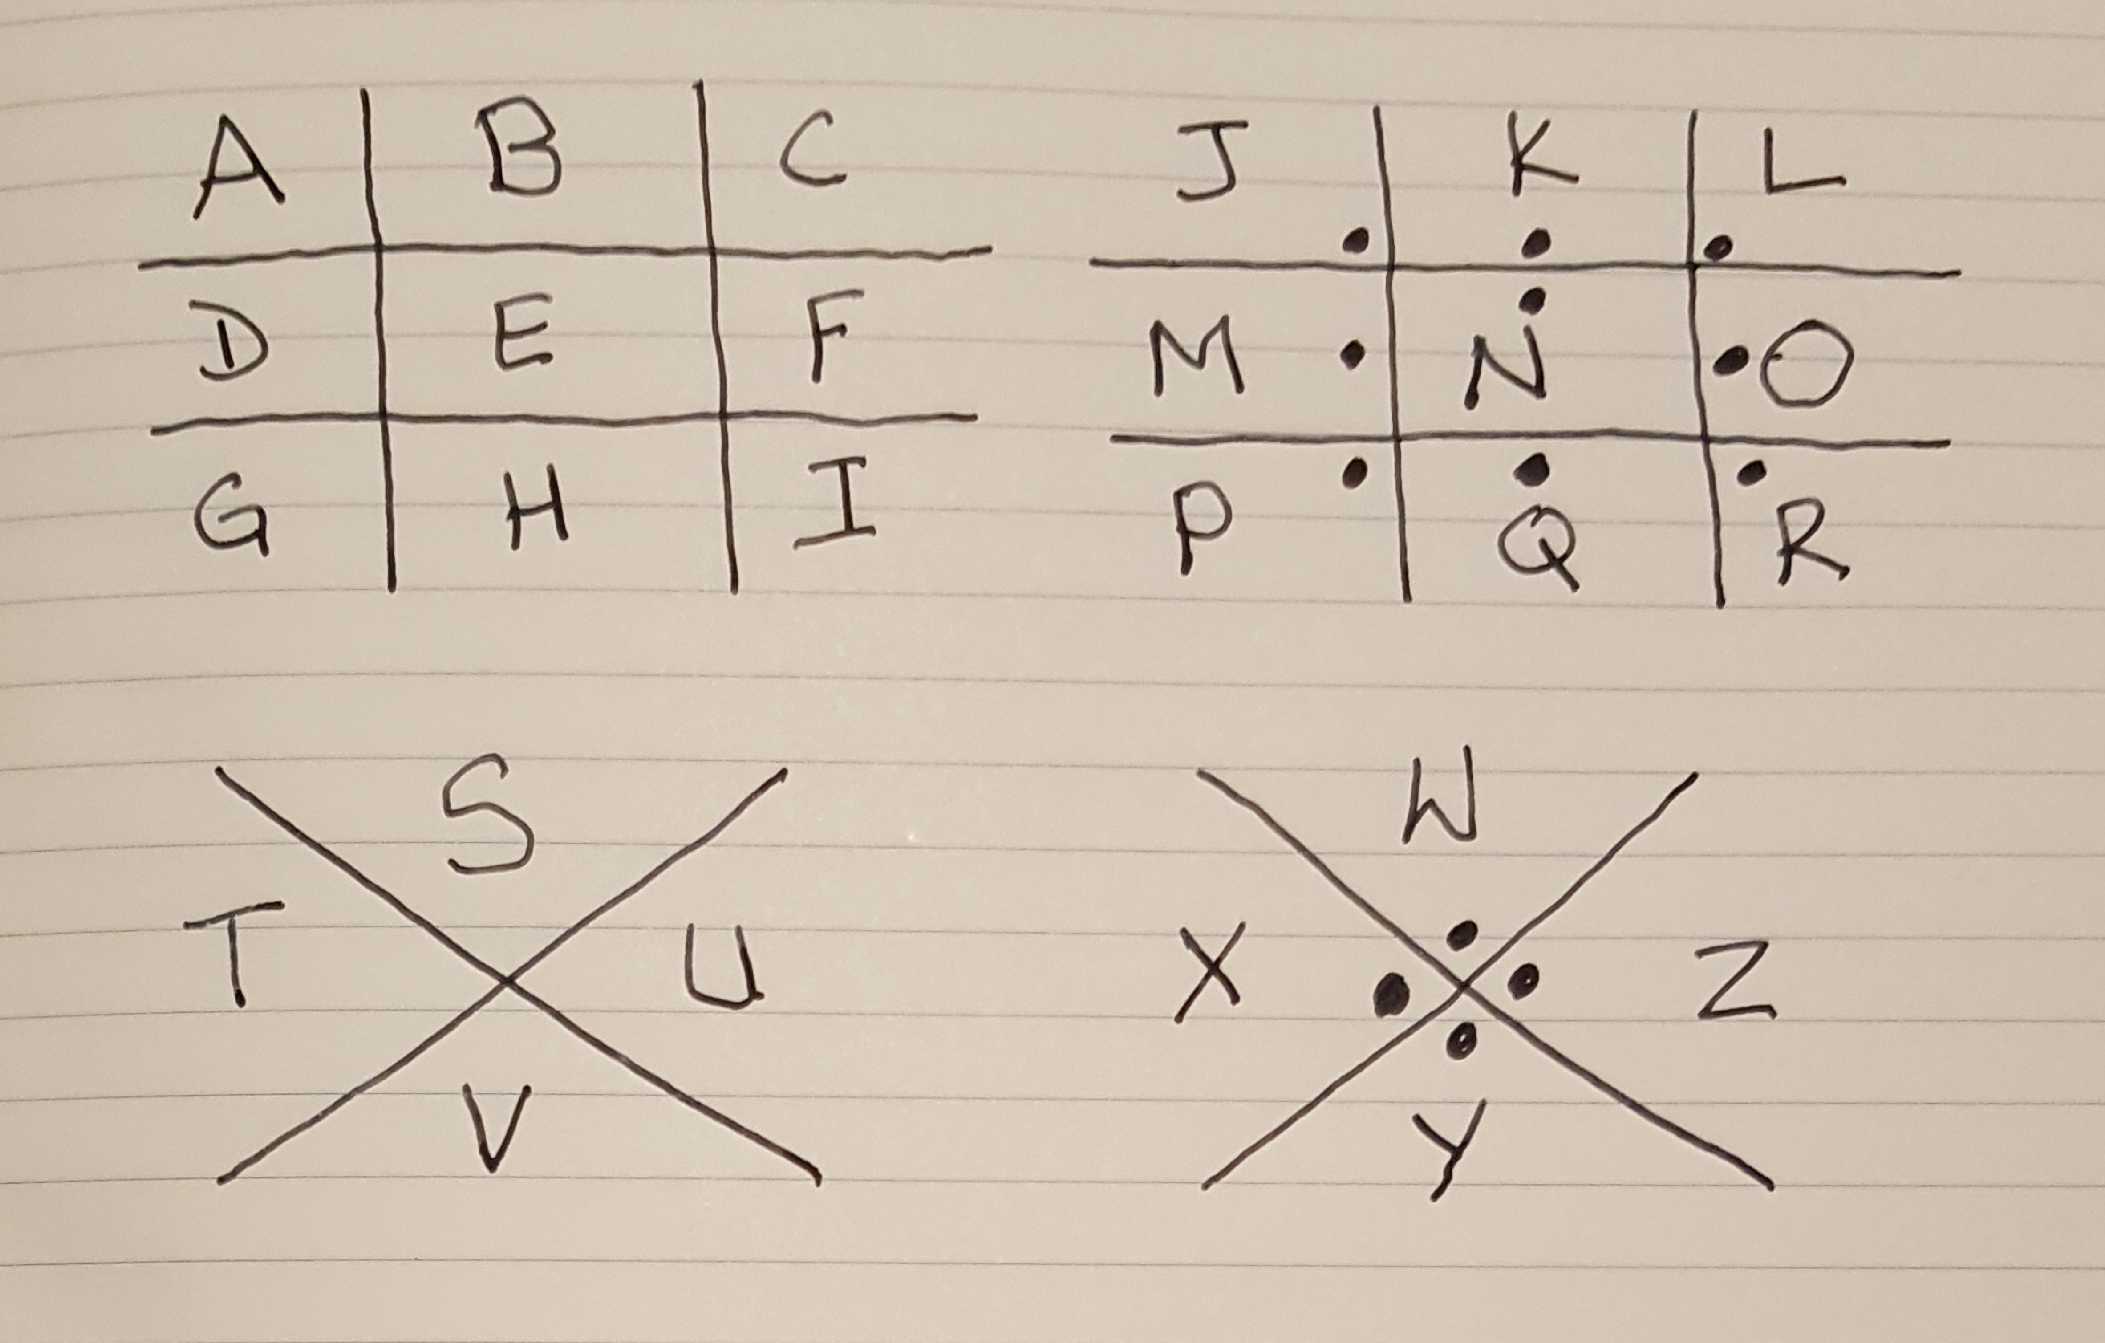 pigpen cipher key